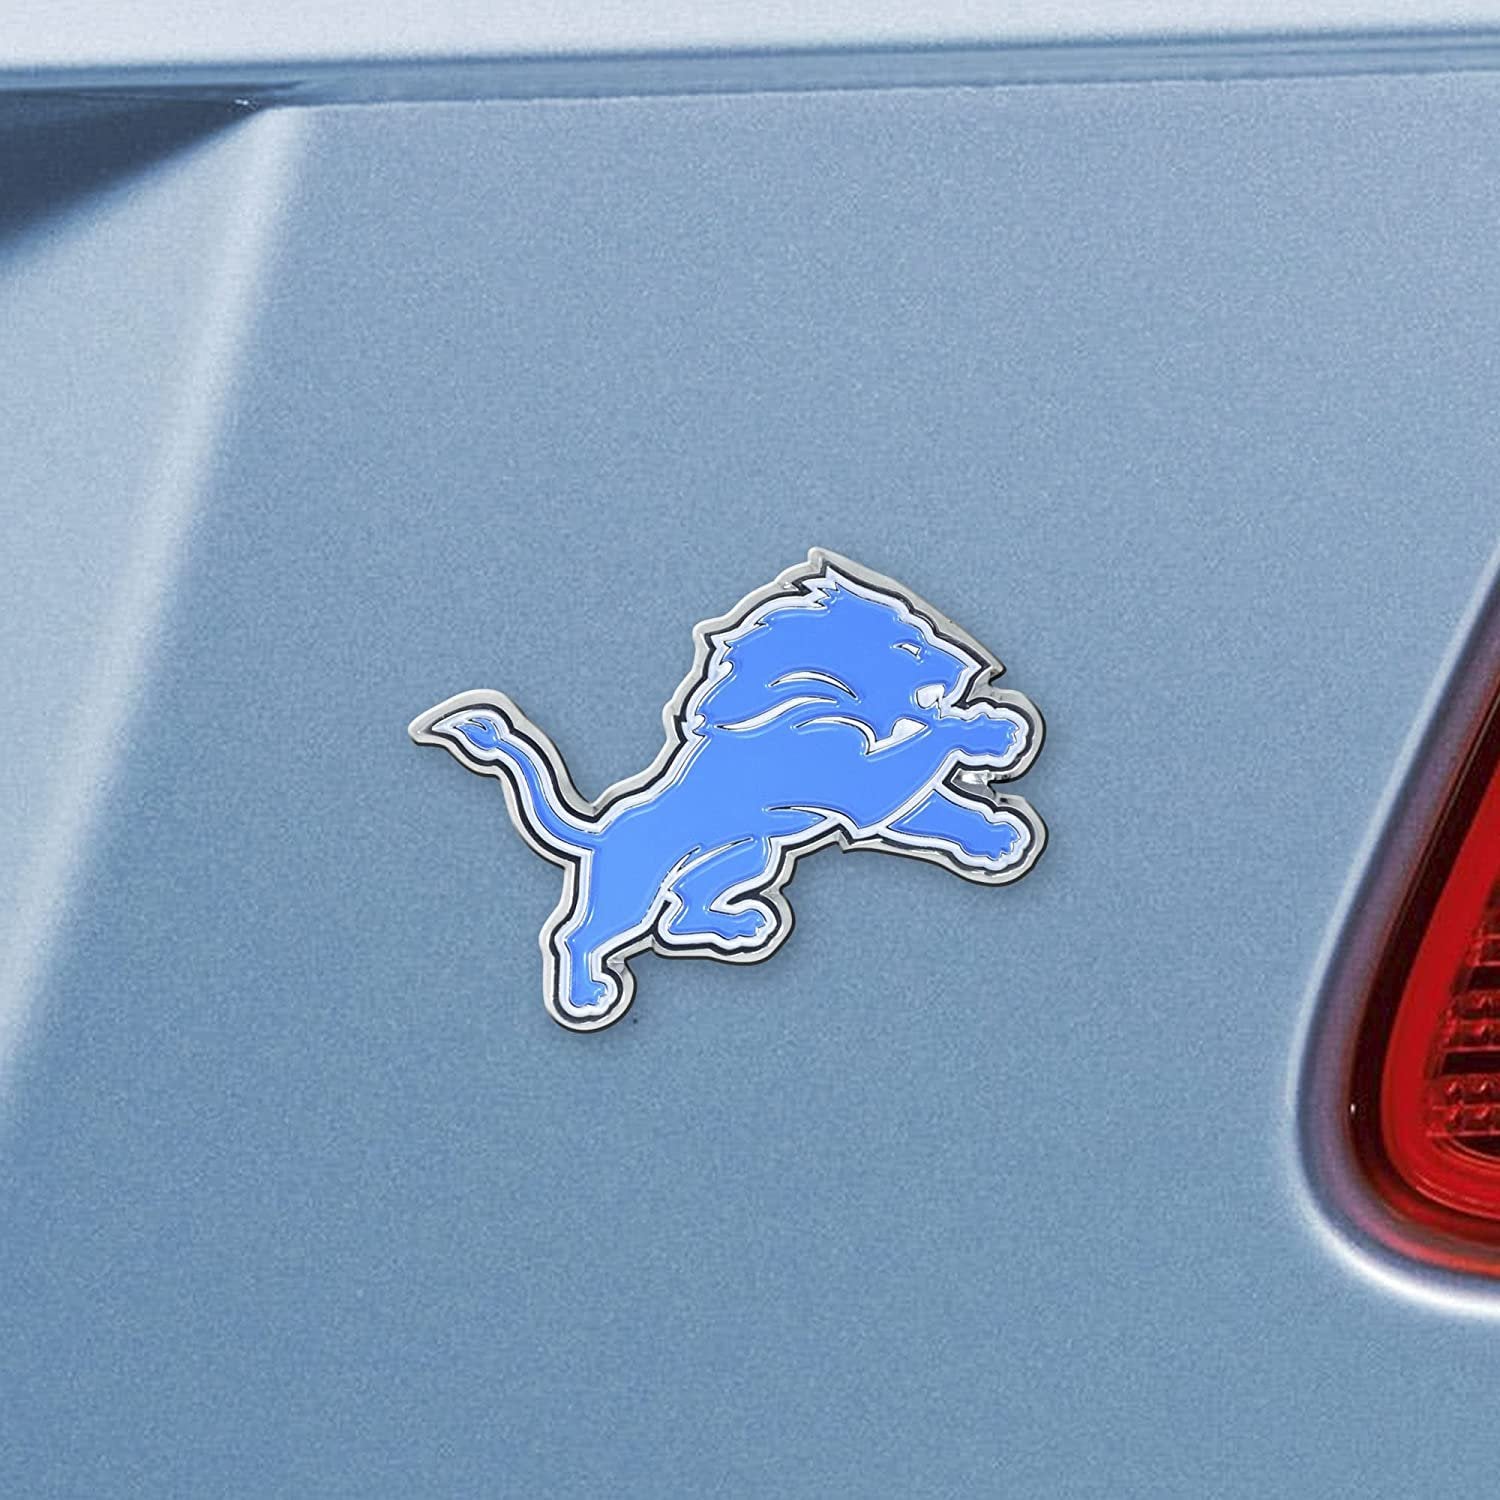 Detroit Lions Premium Solid Metal Raised Auto Emblem, Team Color, Shape Cut, Adhesive Backing